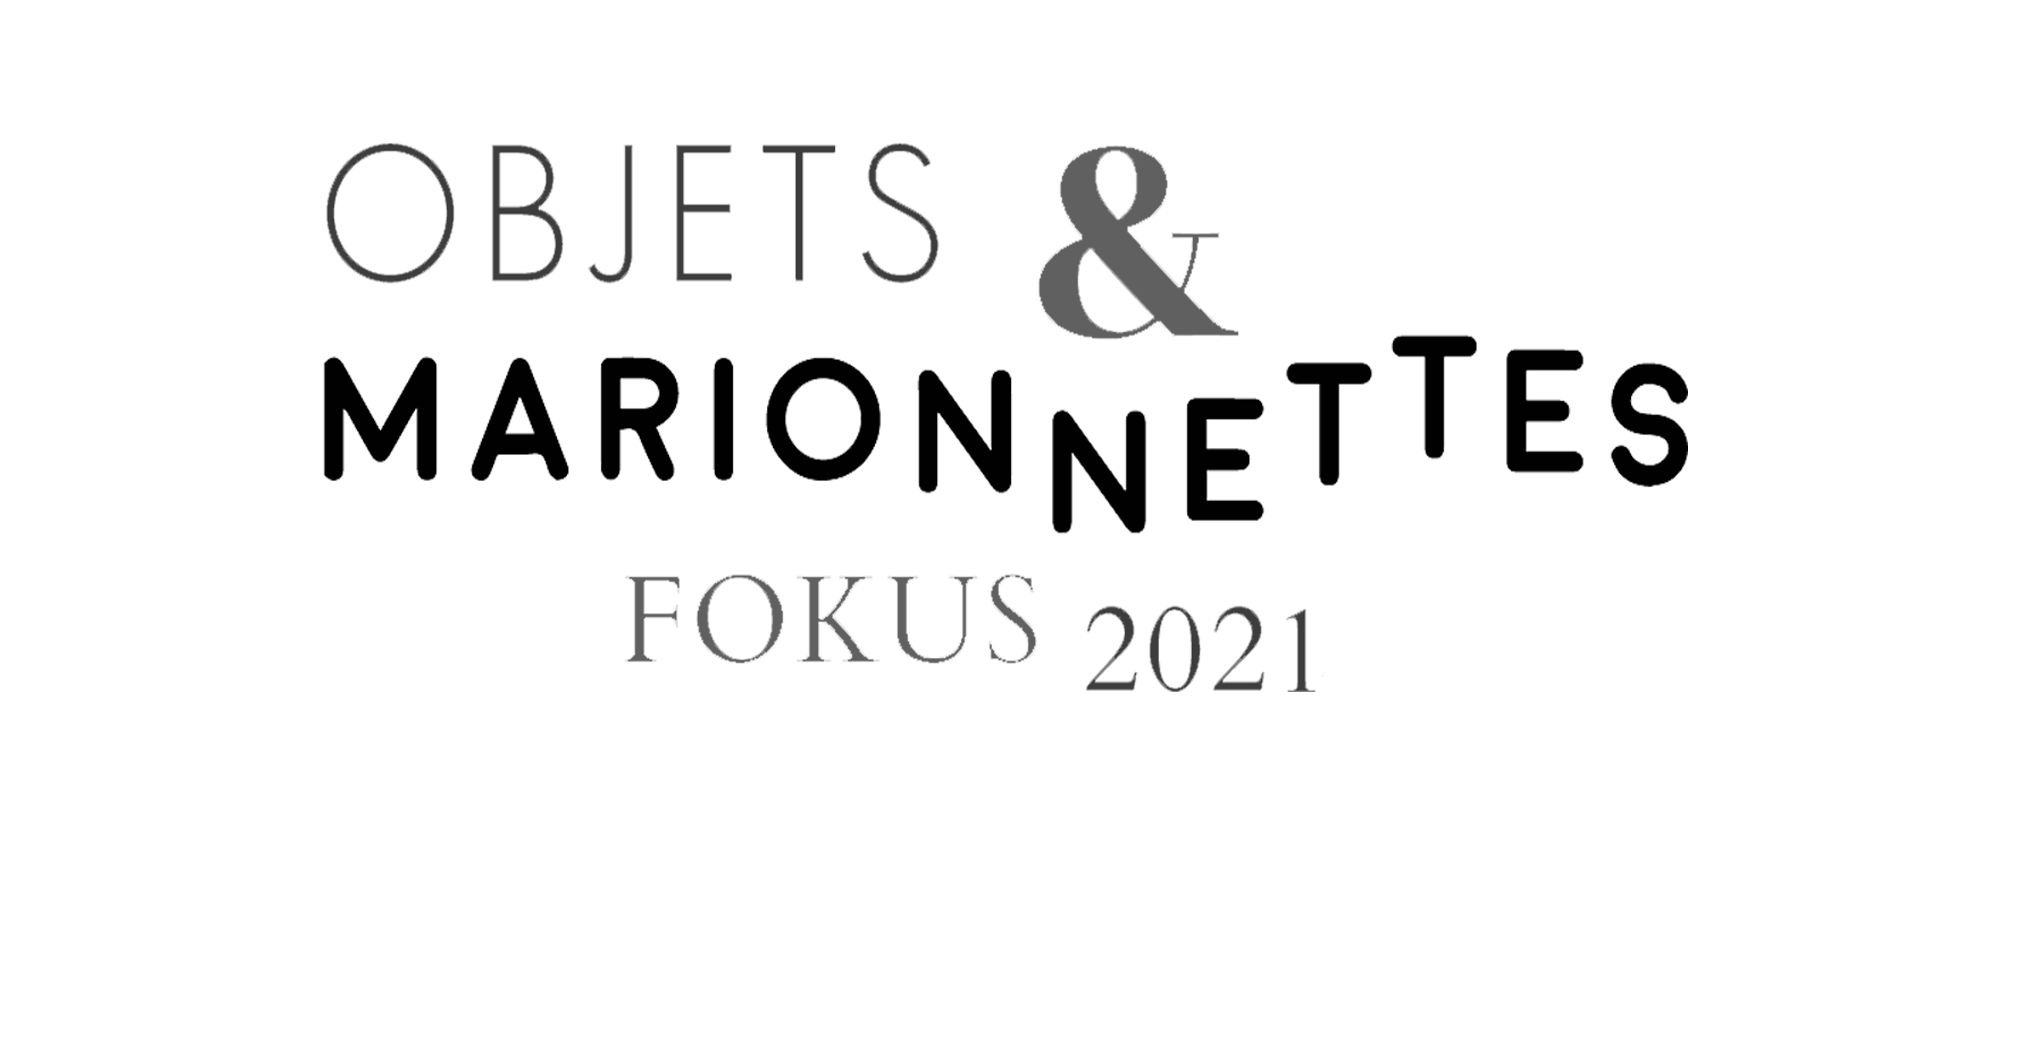 Objets & Marionettes, Fokus 20.21